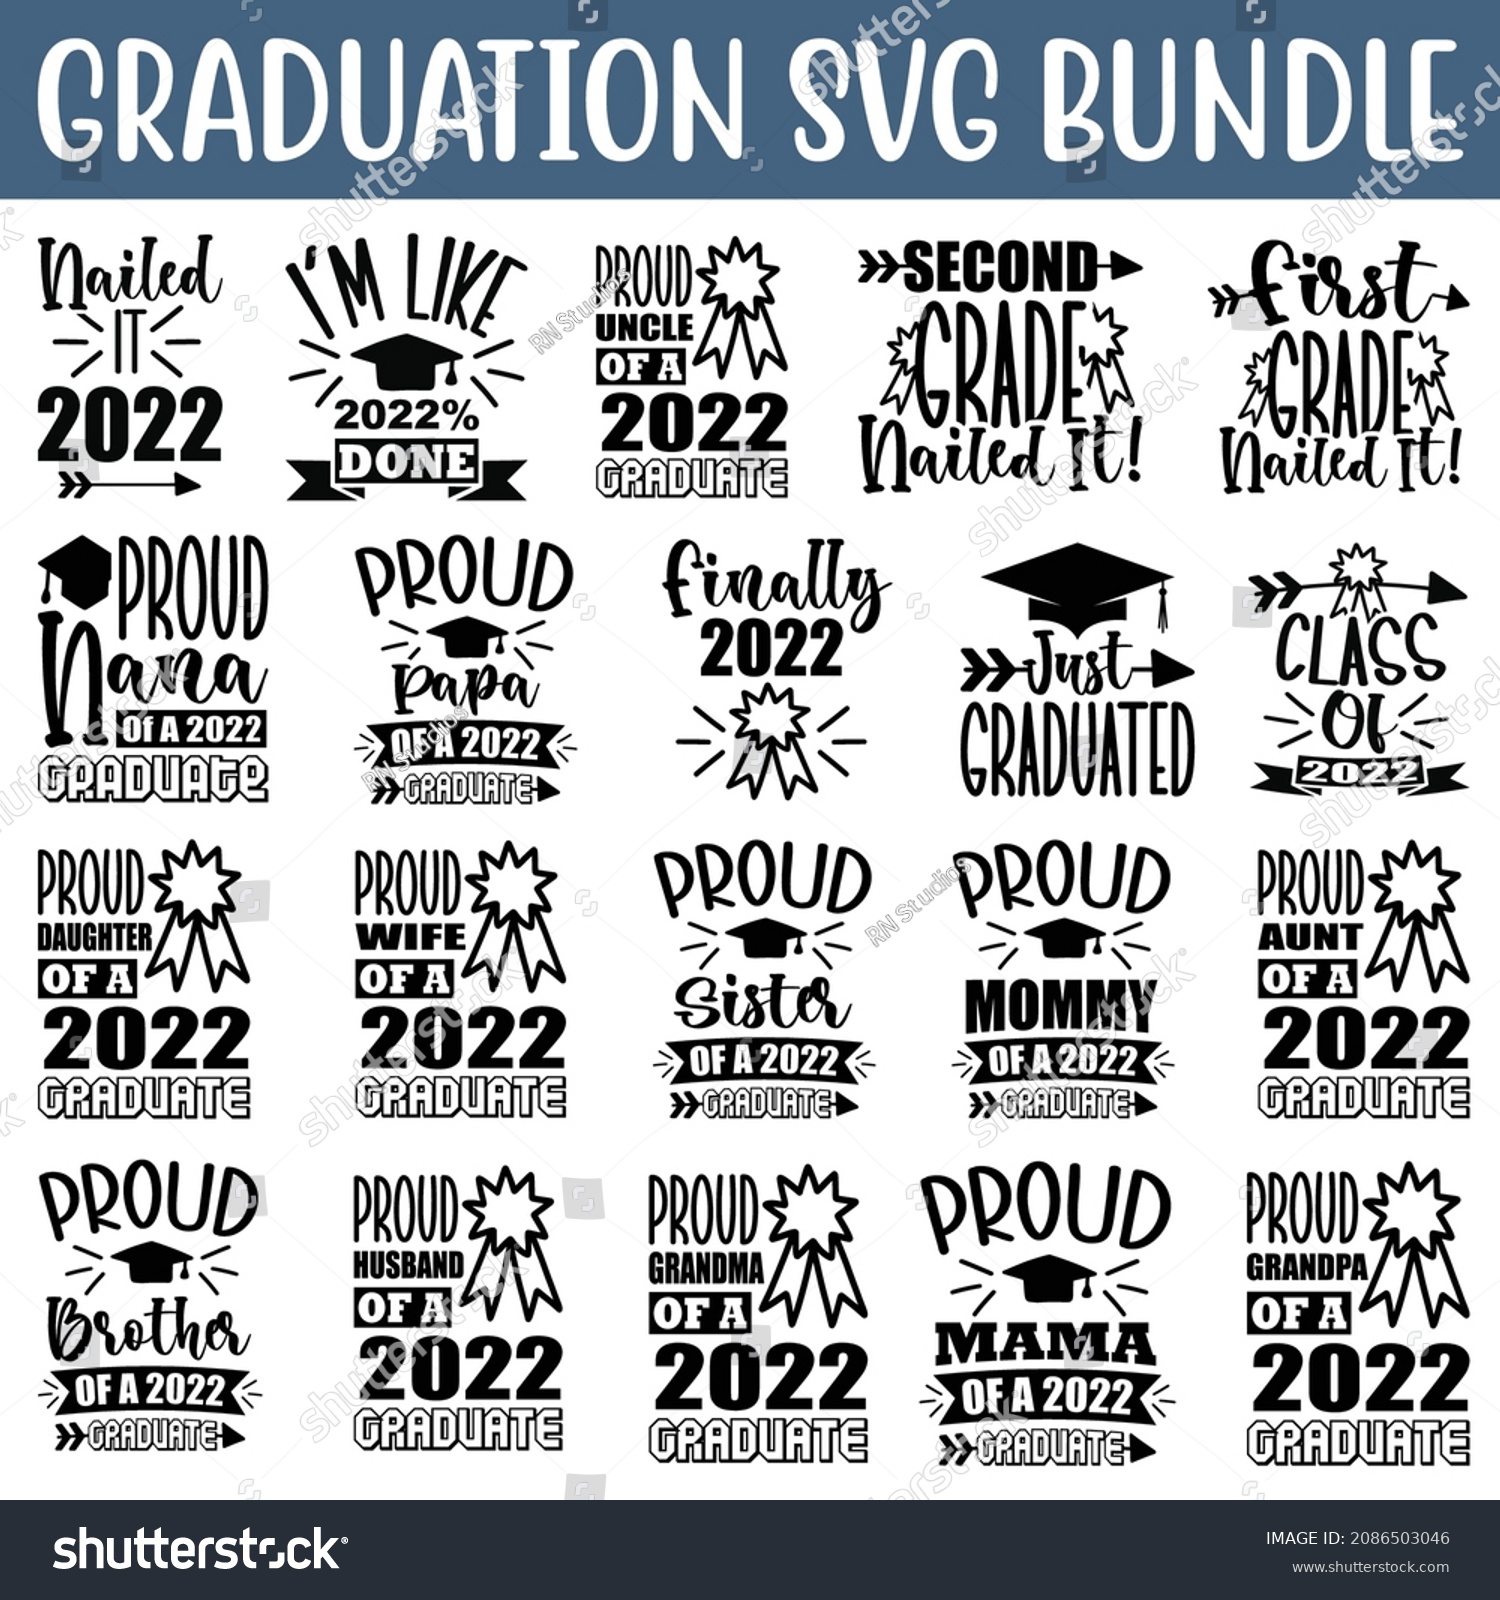 SVG of Graduation SVG Bundle.Graduation  T-shirt Design SVG Bundle. svg